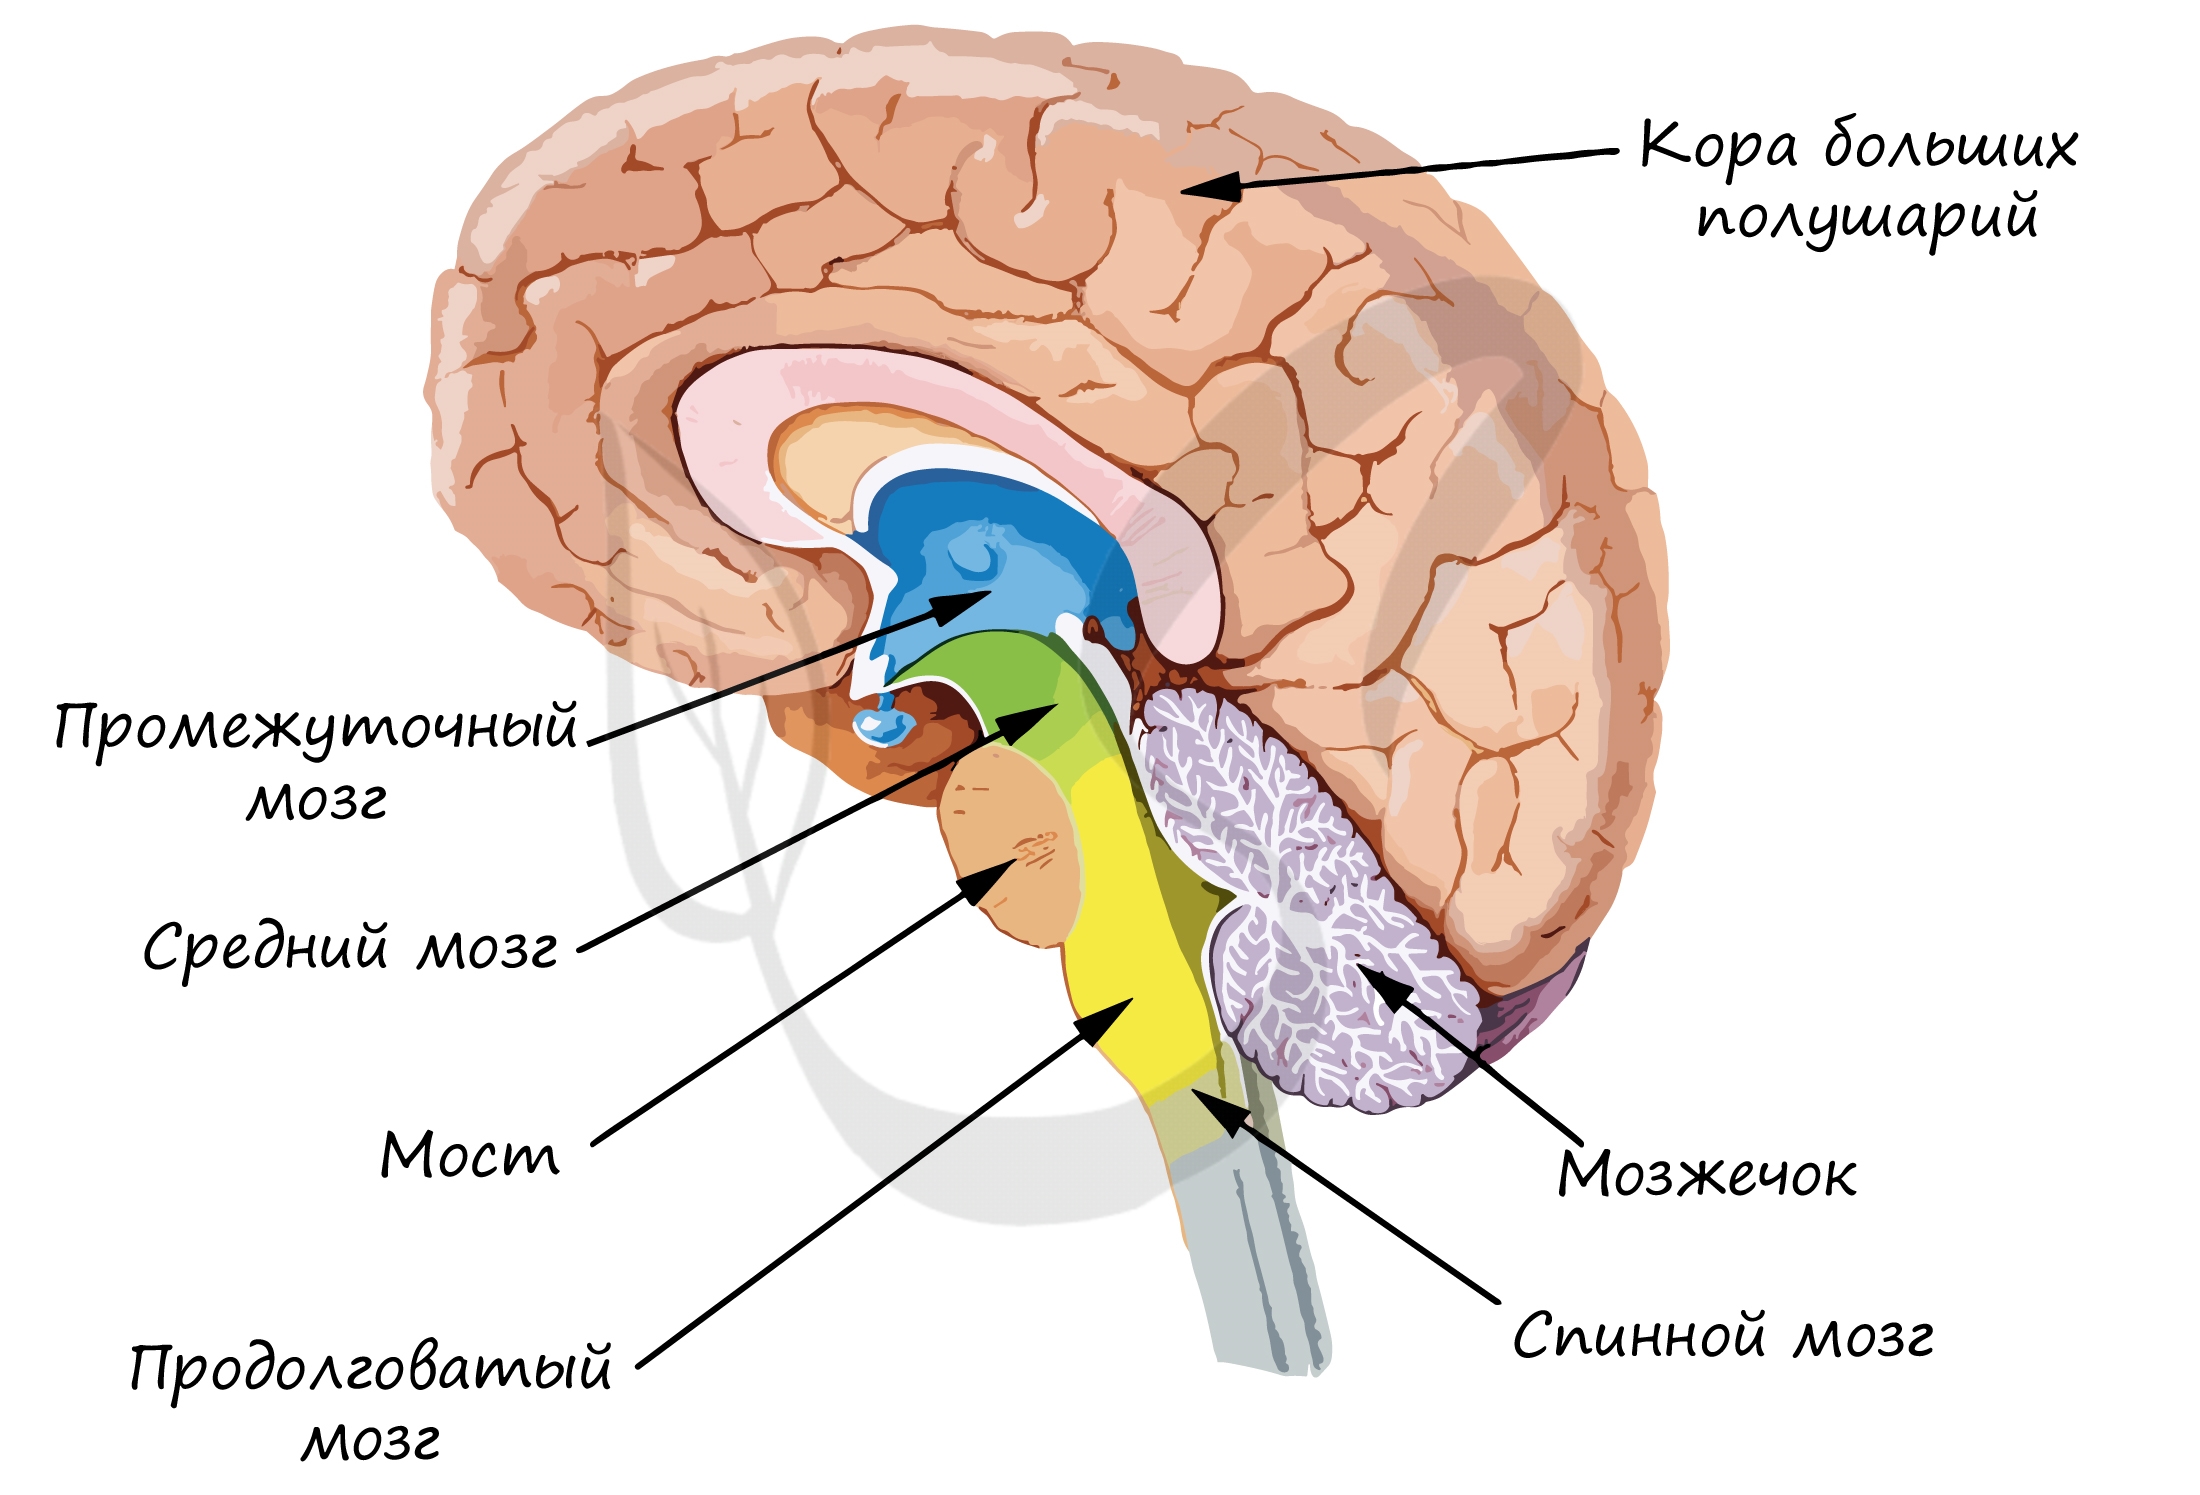 Правильную последовательность расположения отделов спинного мозга